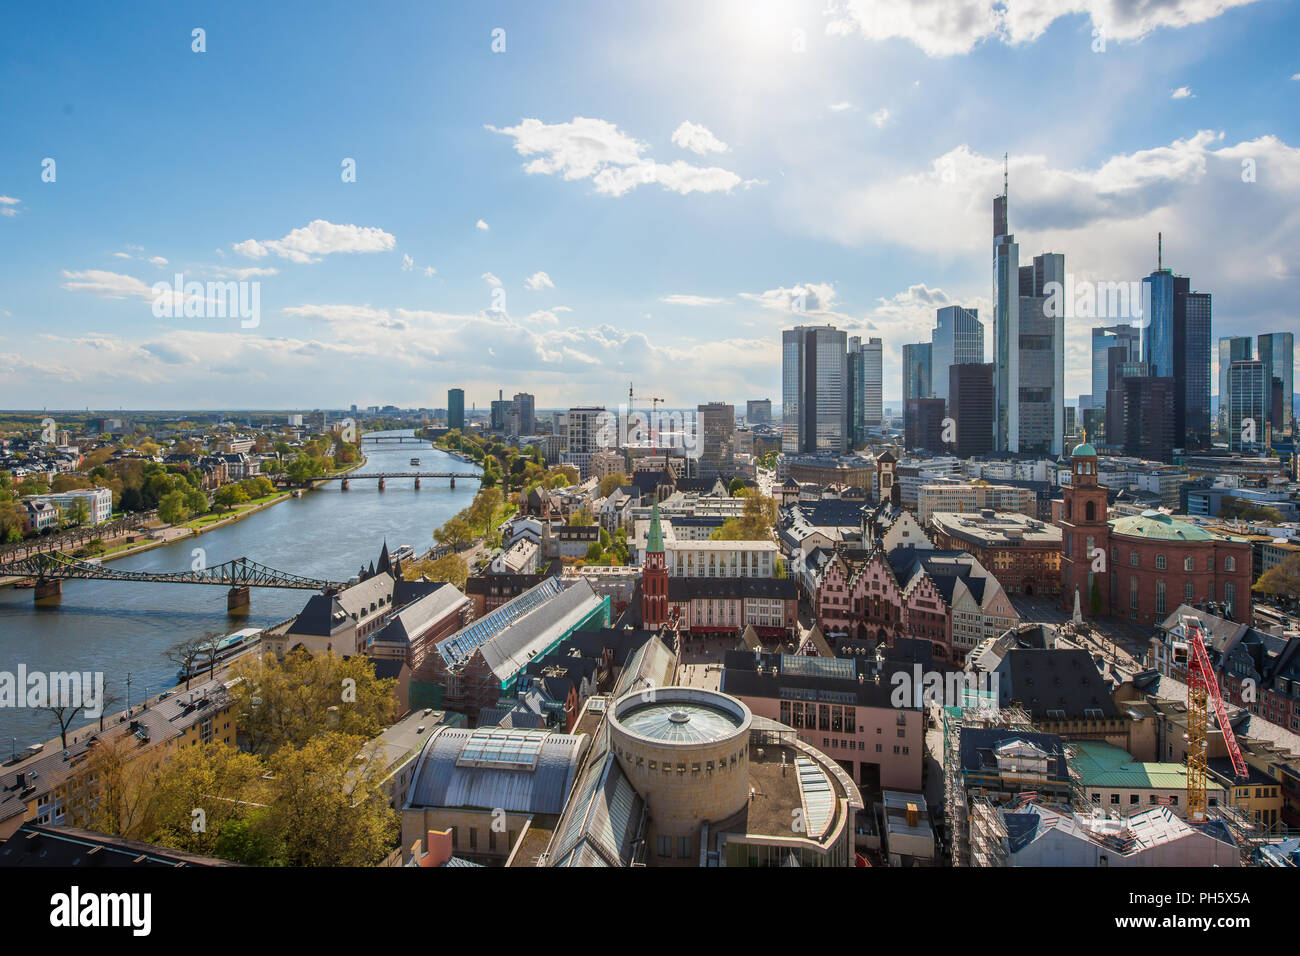 Blick auf Skyline im Zentrum Geschäftsviertel in Frankfurt am Main, Deutschland. Frankfurt ist finanzielles Zentrum Deutschlands und Europas. Stockfoto